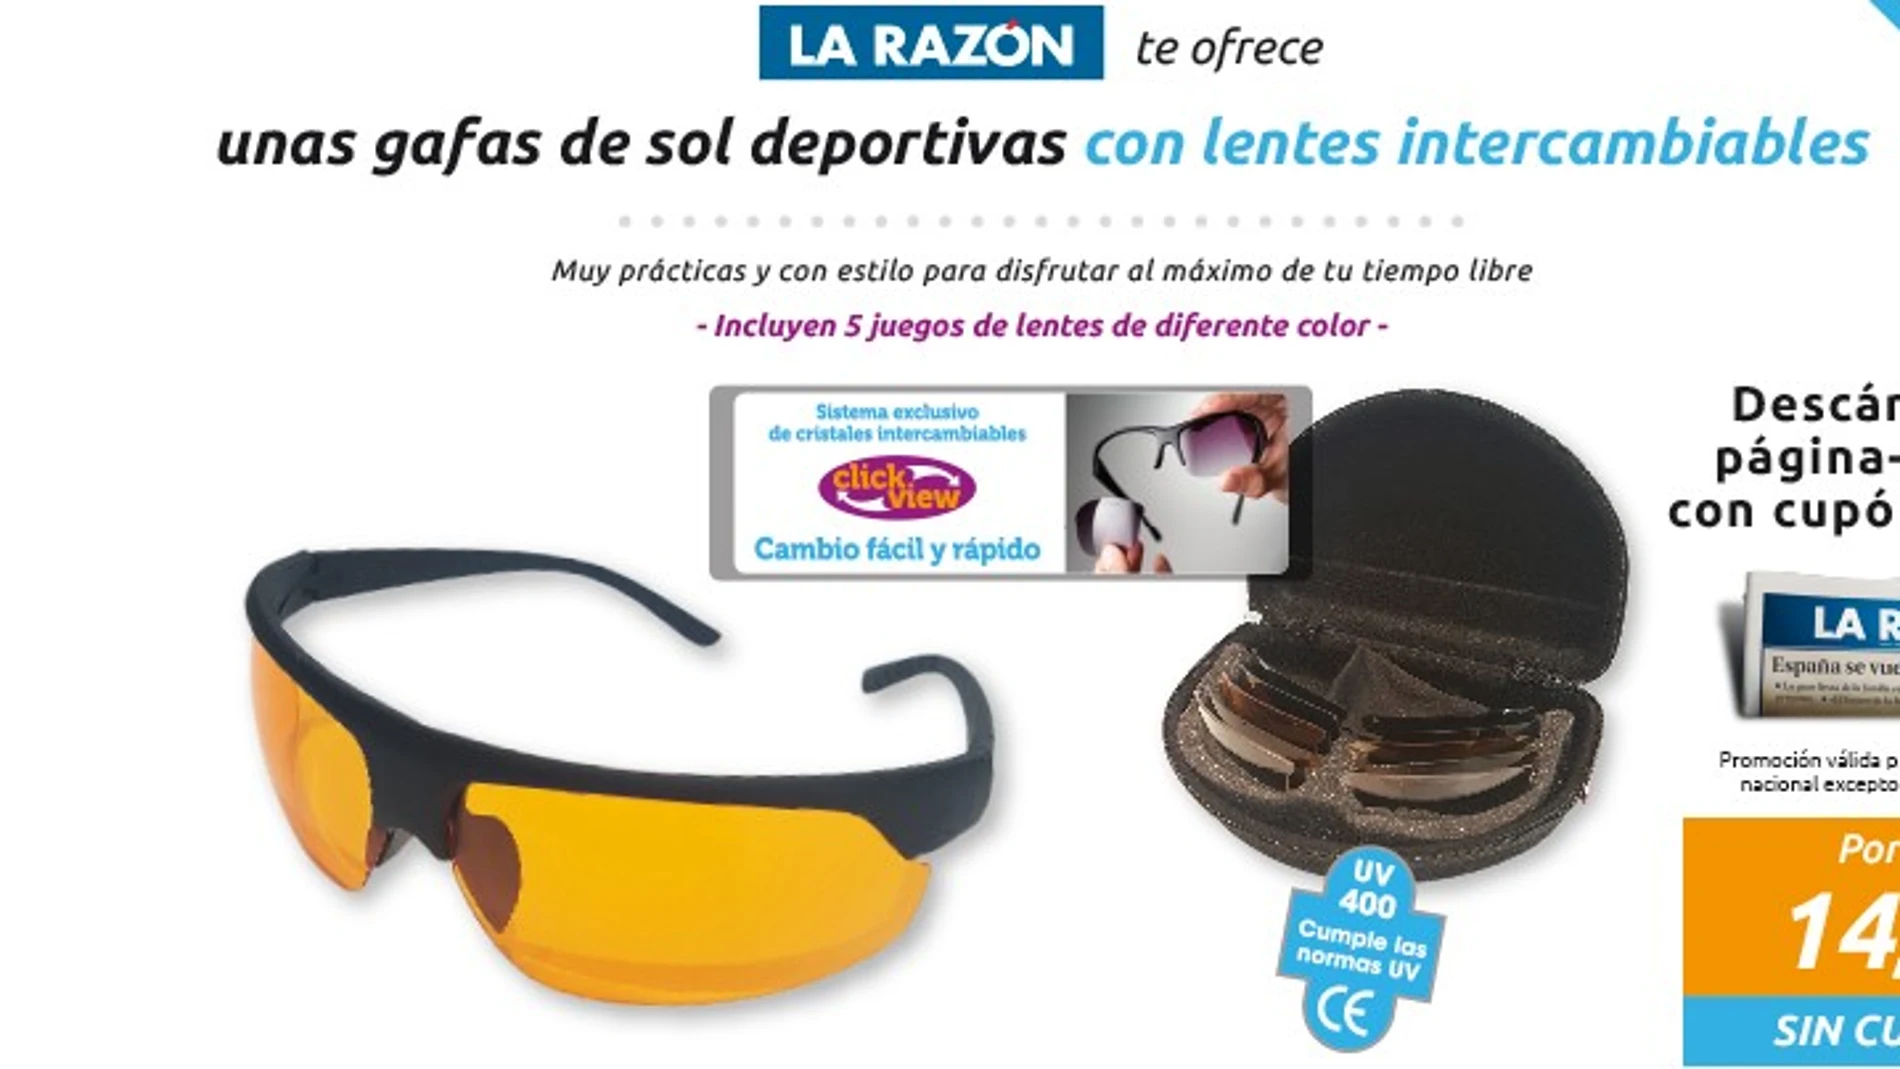 Gafas de sol deportivas con lentes intercambiables